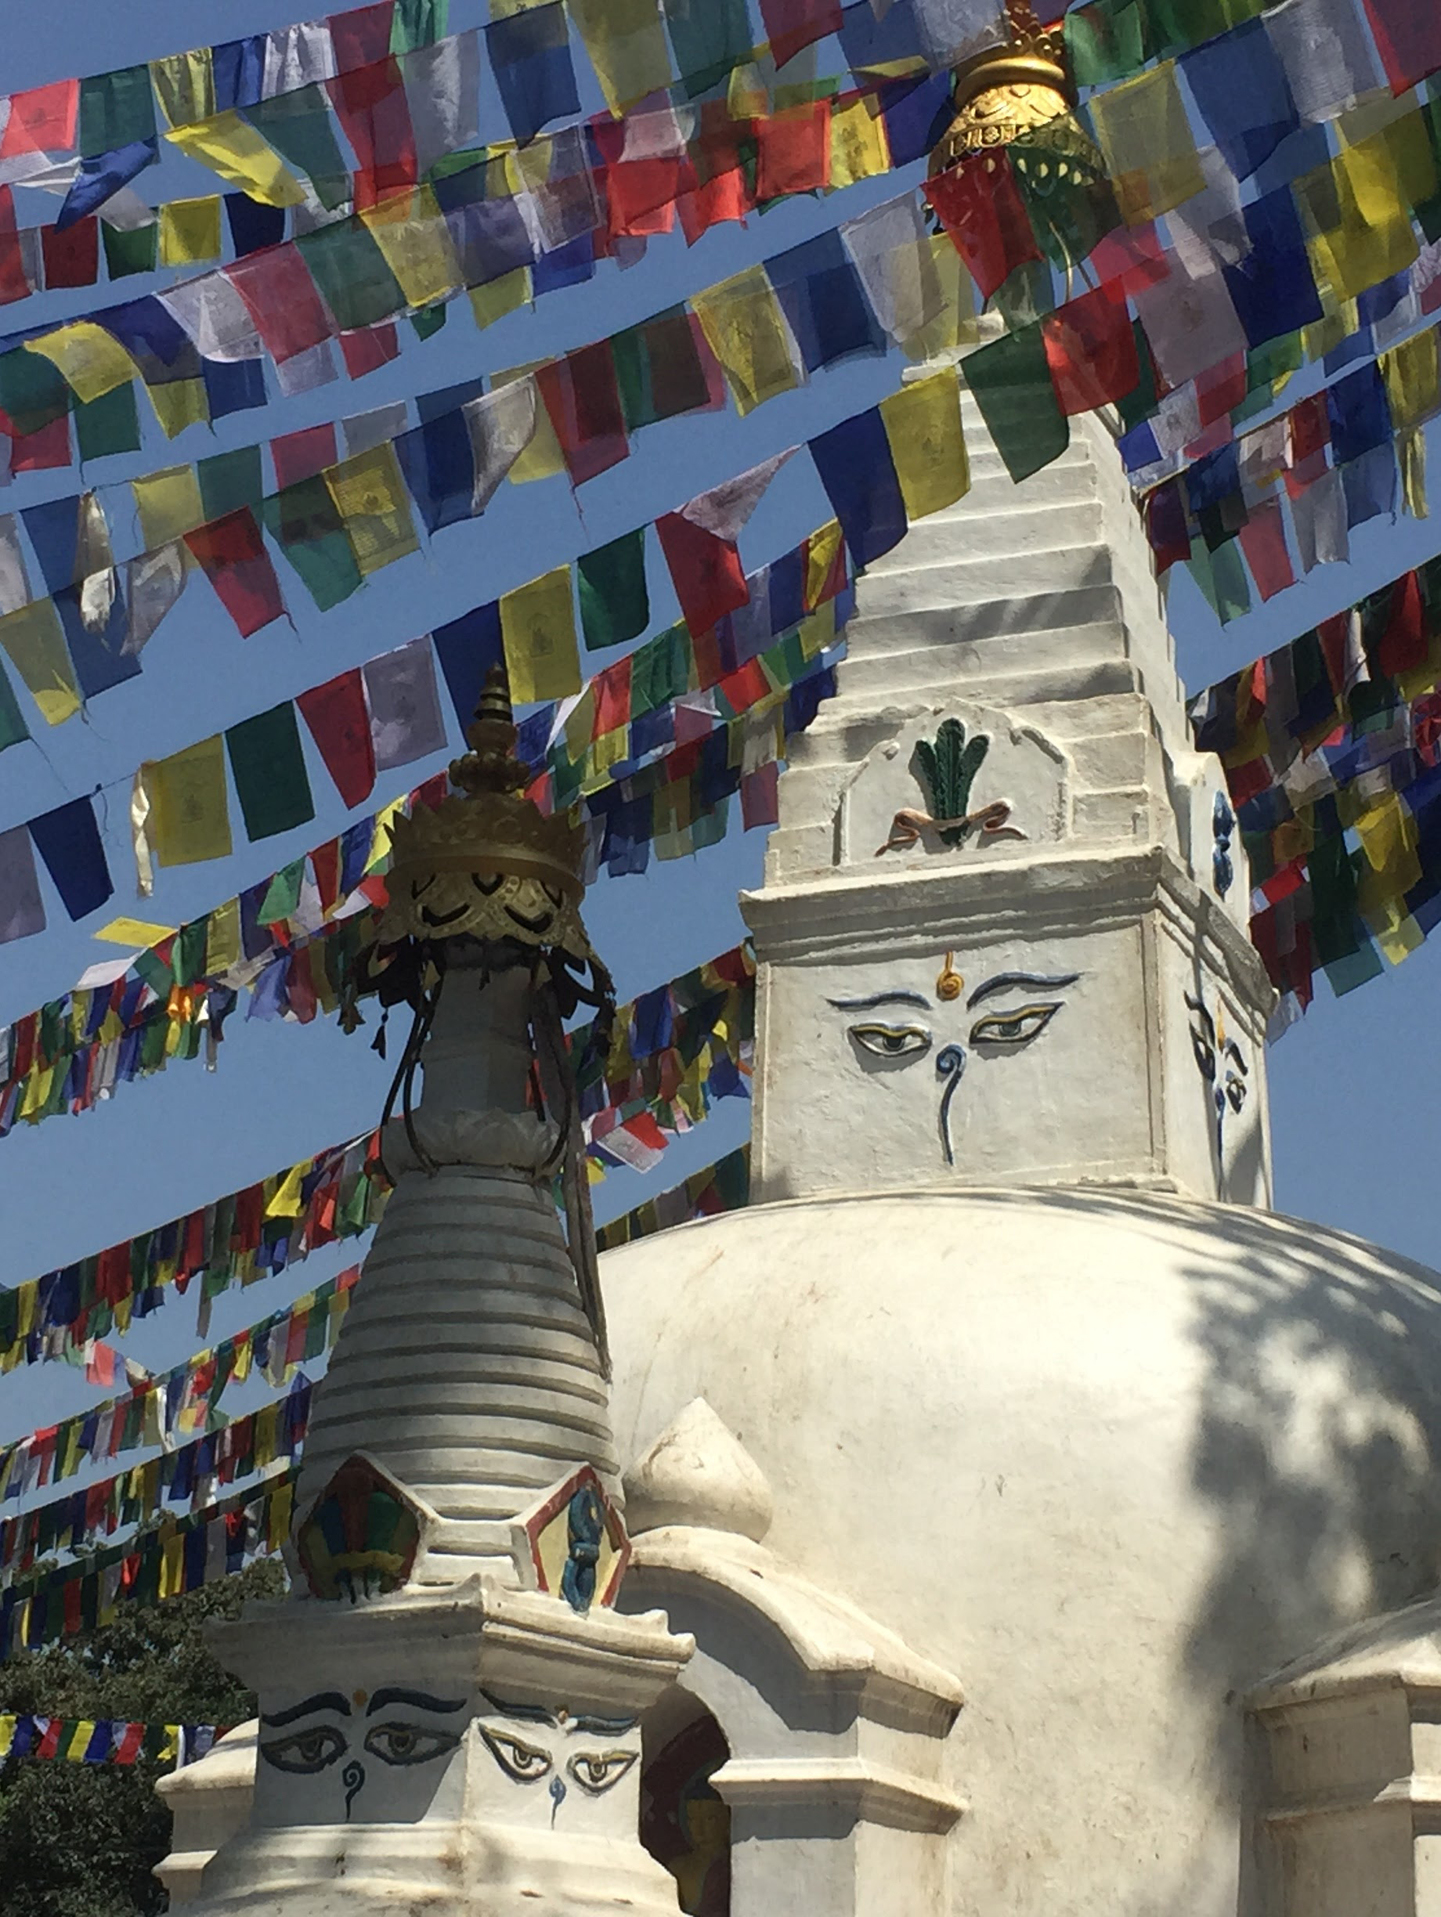 Nepal y Bhutan: Antiguos Reinos